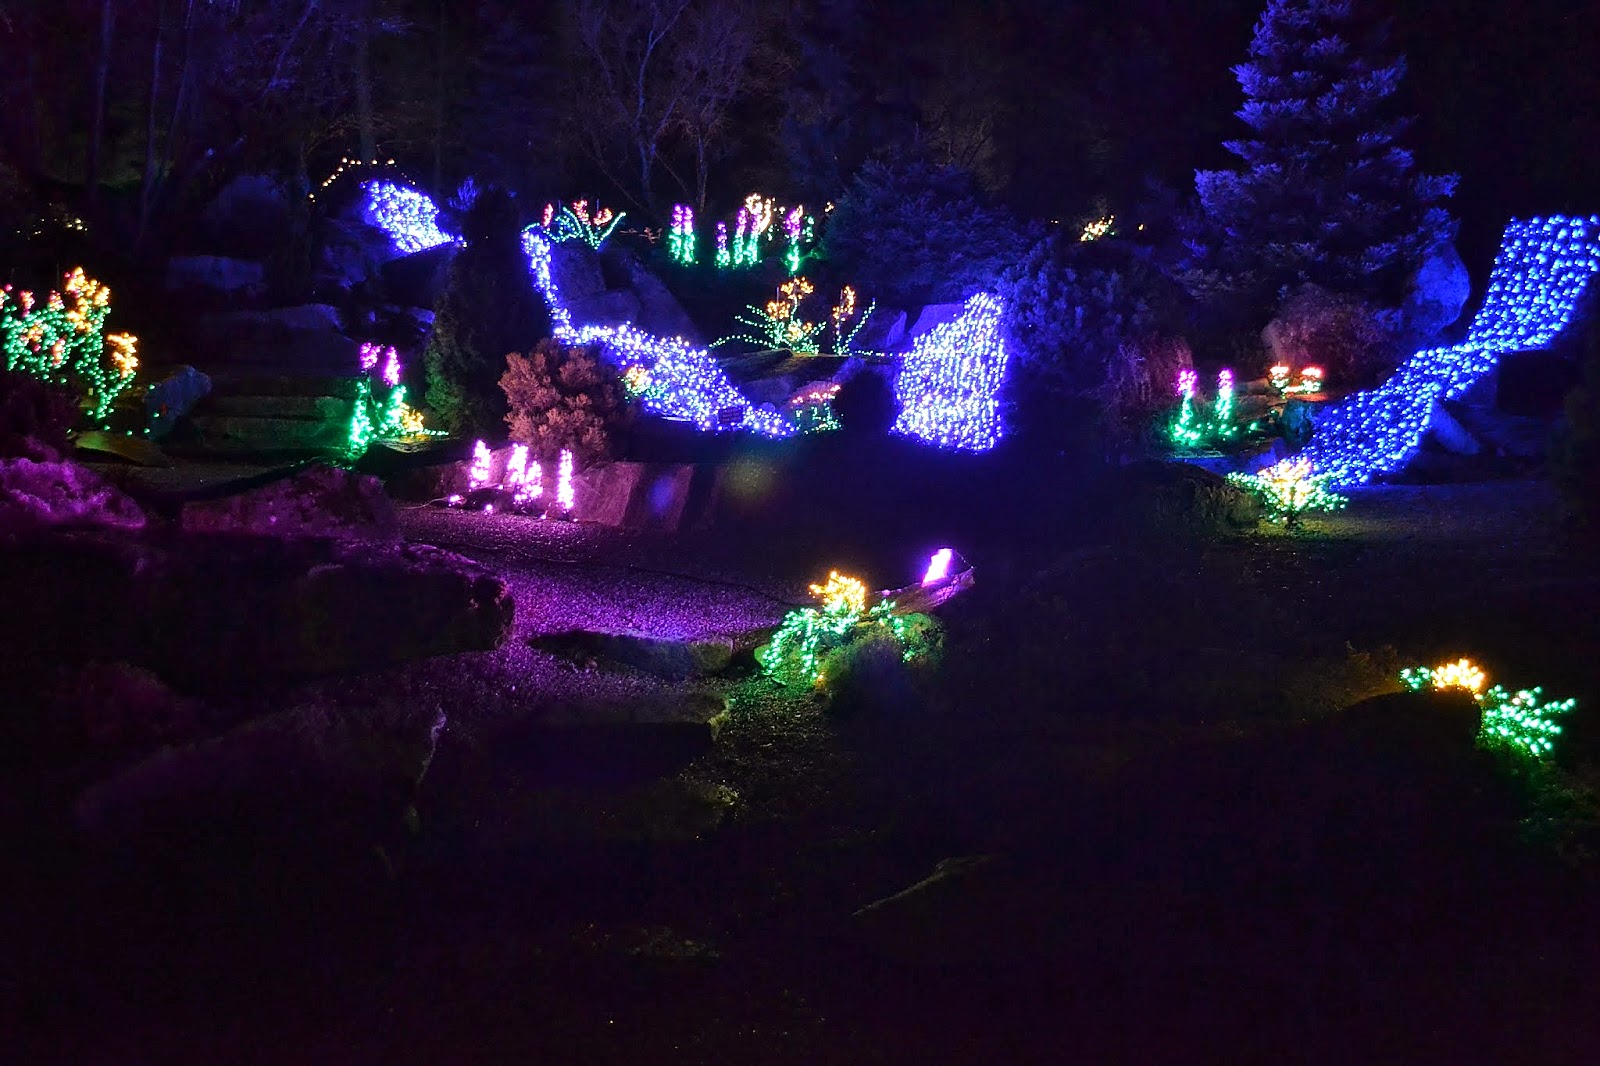 The Outlaw Gardener: Garden d'Lights at Bellevue Botanical Garden